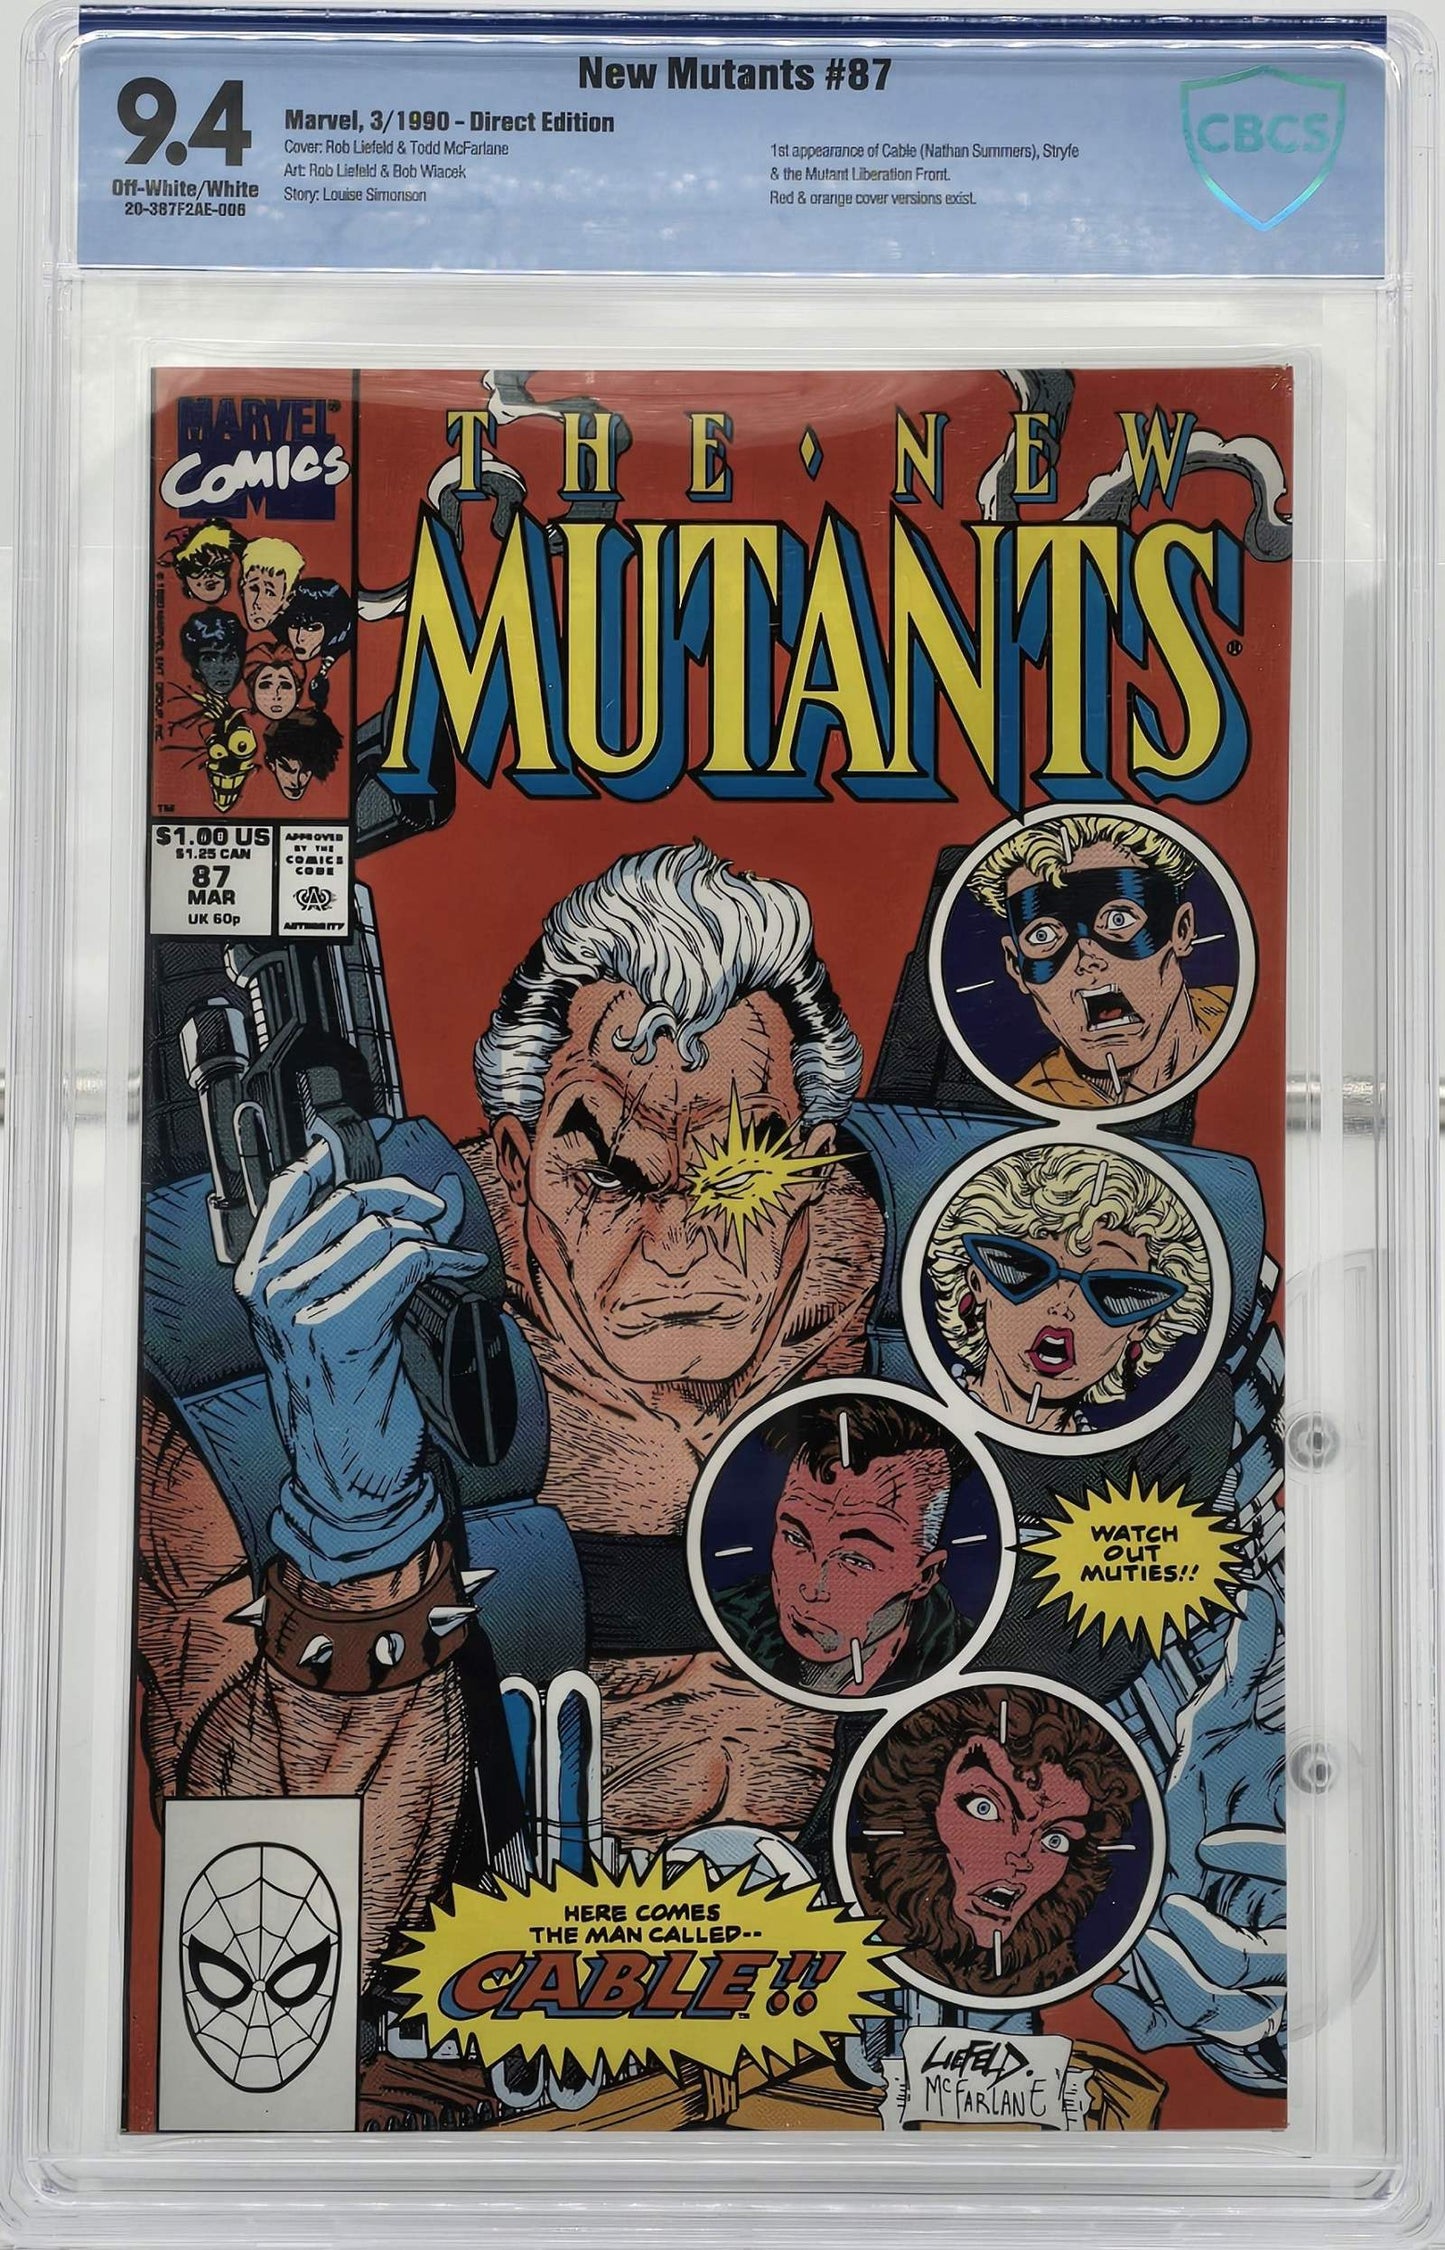 New Mutants Vol 1 #87 CBCS 9.4